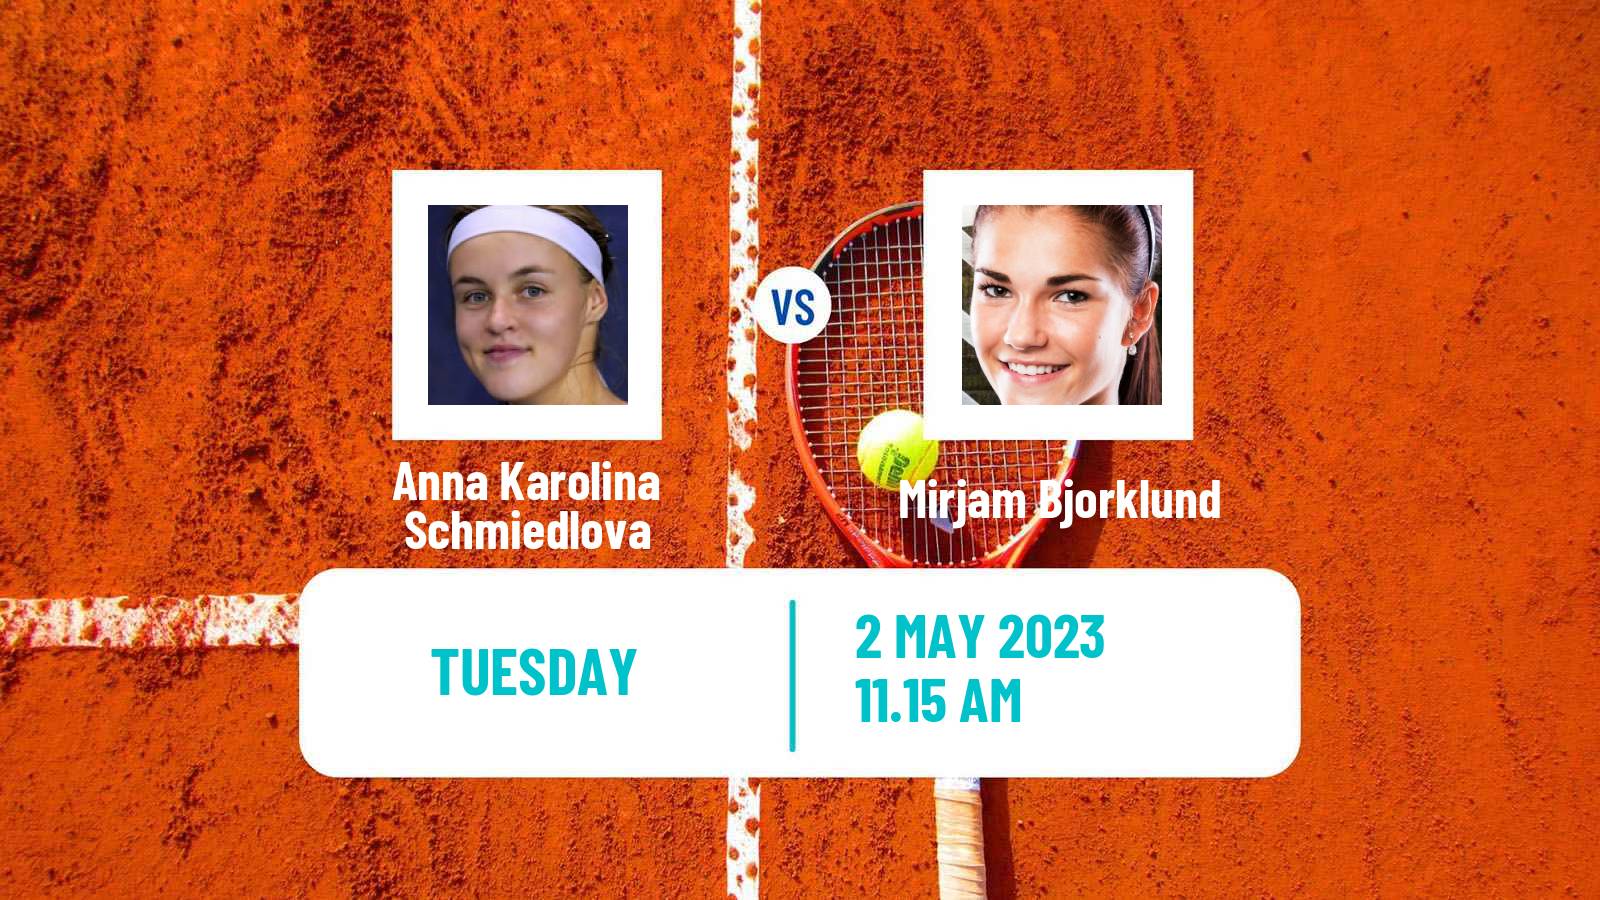 Tennis ATP Challenger Anna Karolina Schmiedlova - Mirjam Bjorklund